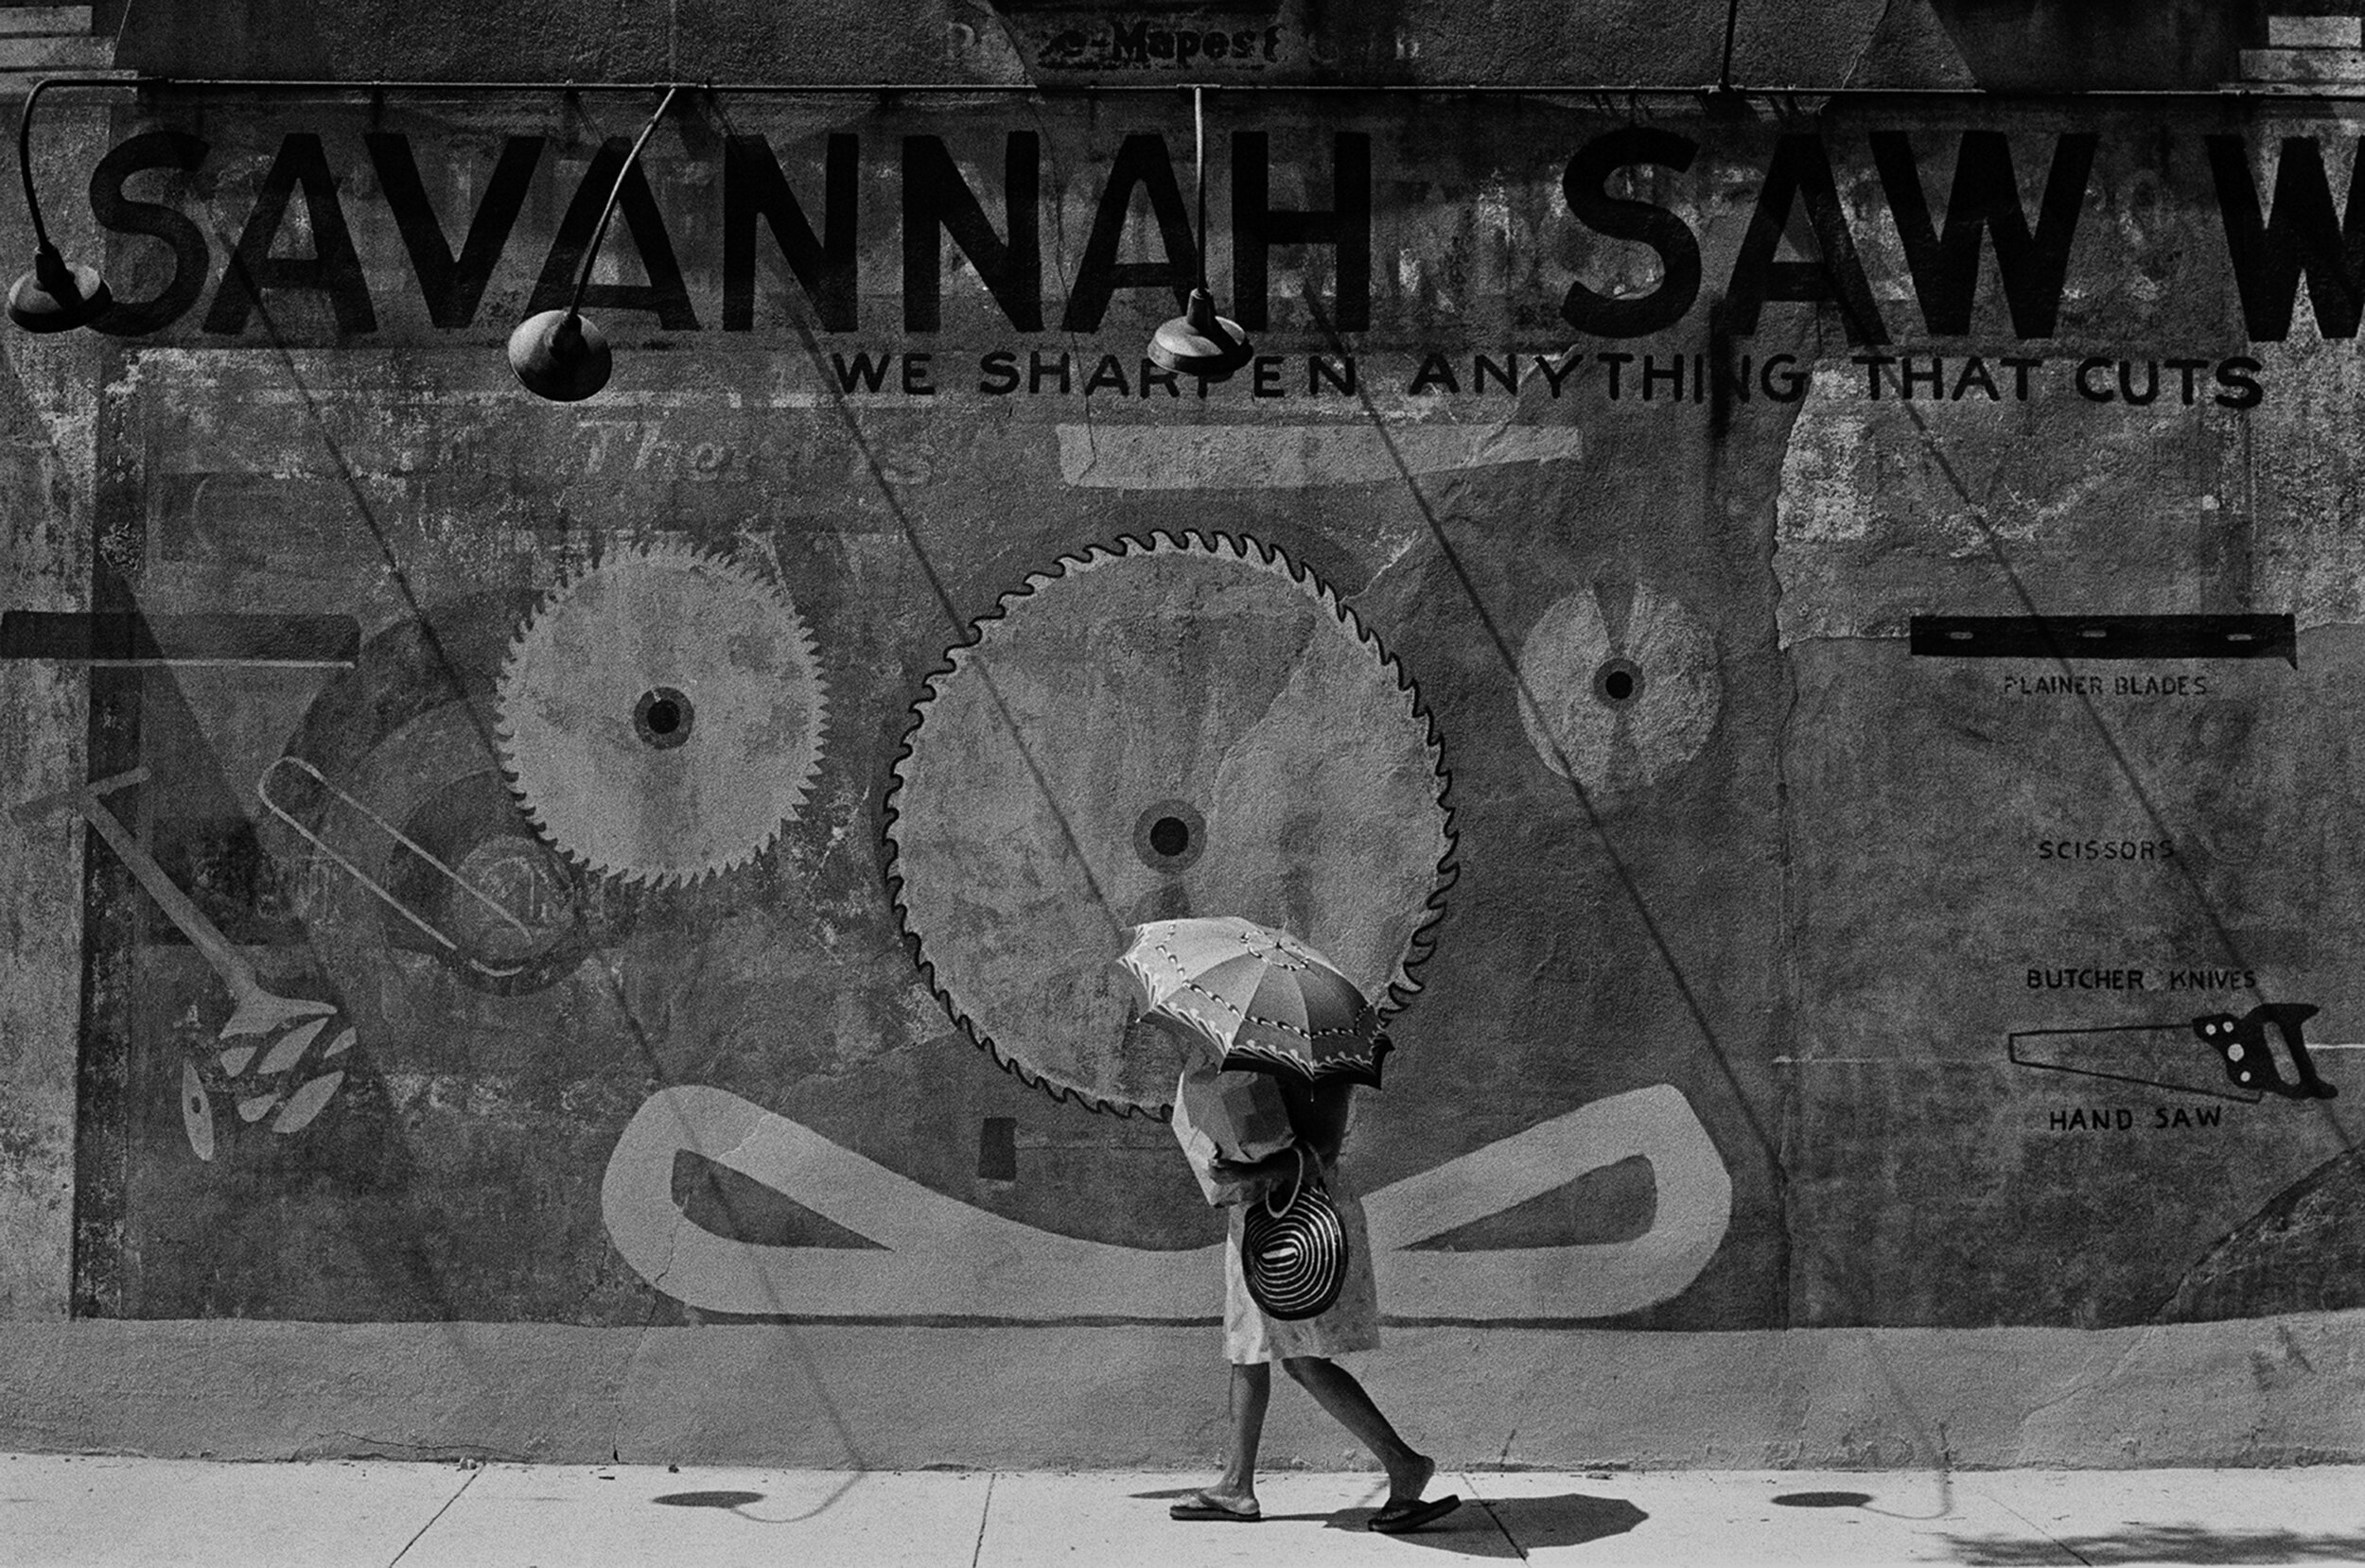 Savannah Saw Works.jpg